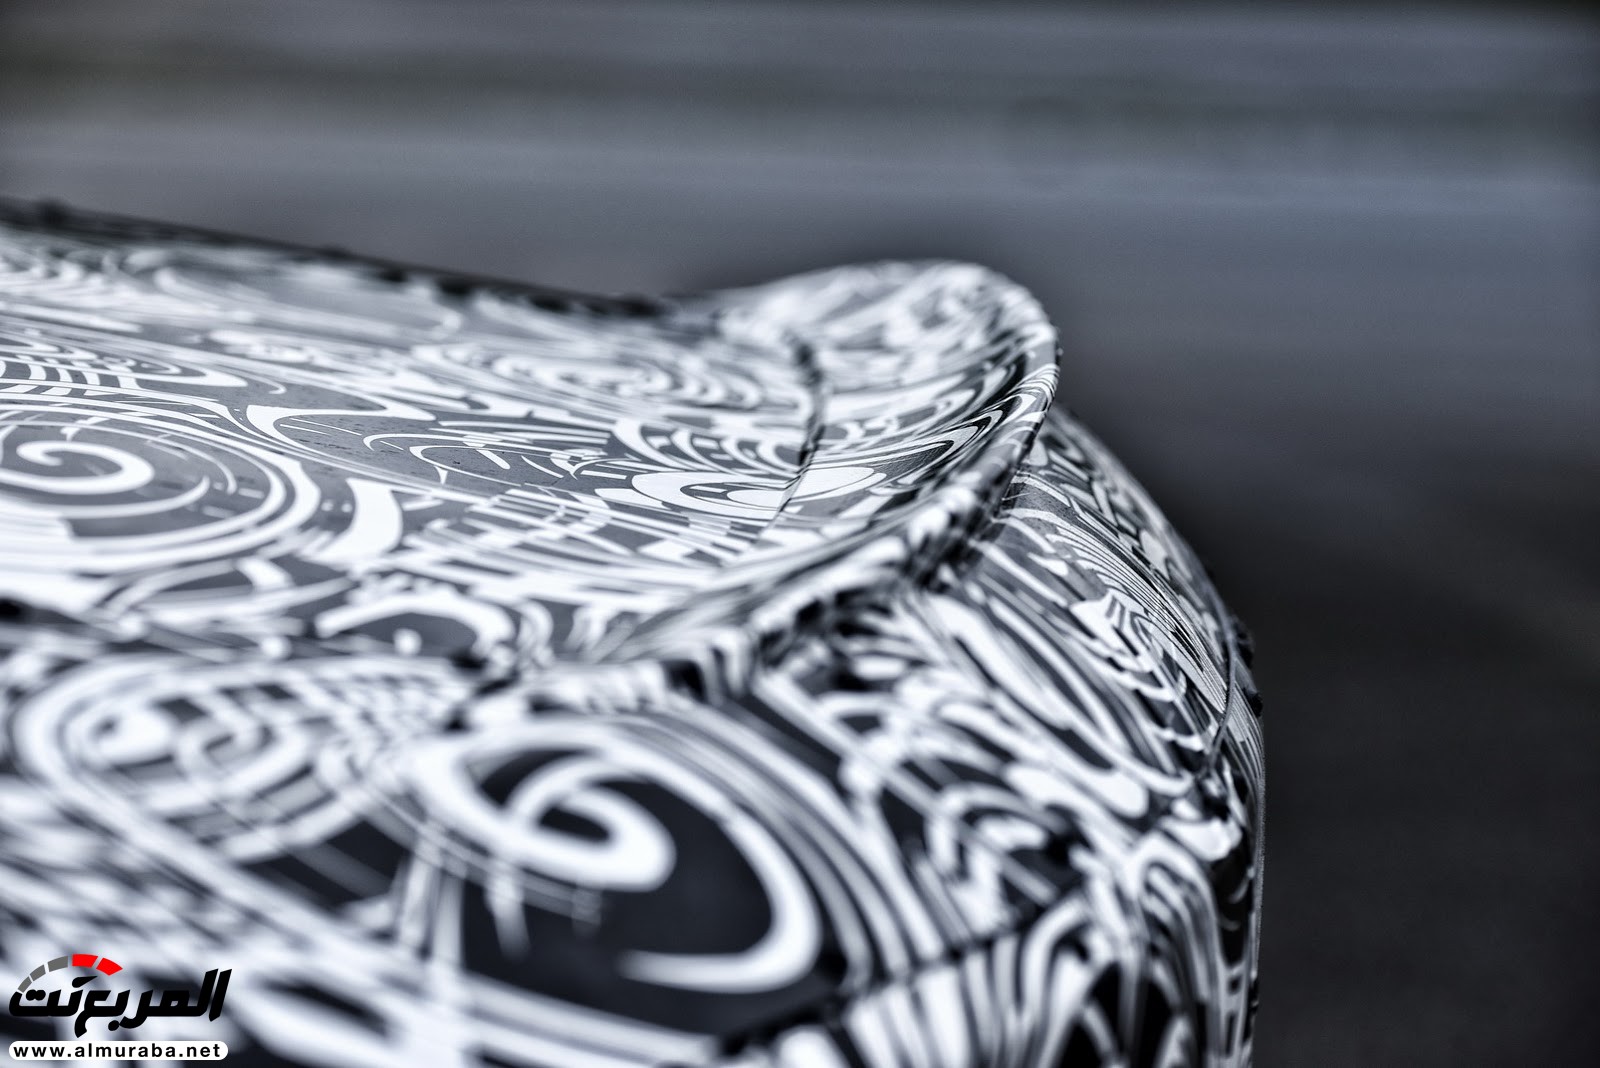 بي إم دبليو M8 يكشف عن نموذجها - وسيارة سباق الفئة الثامنة في الطريق 61